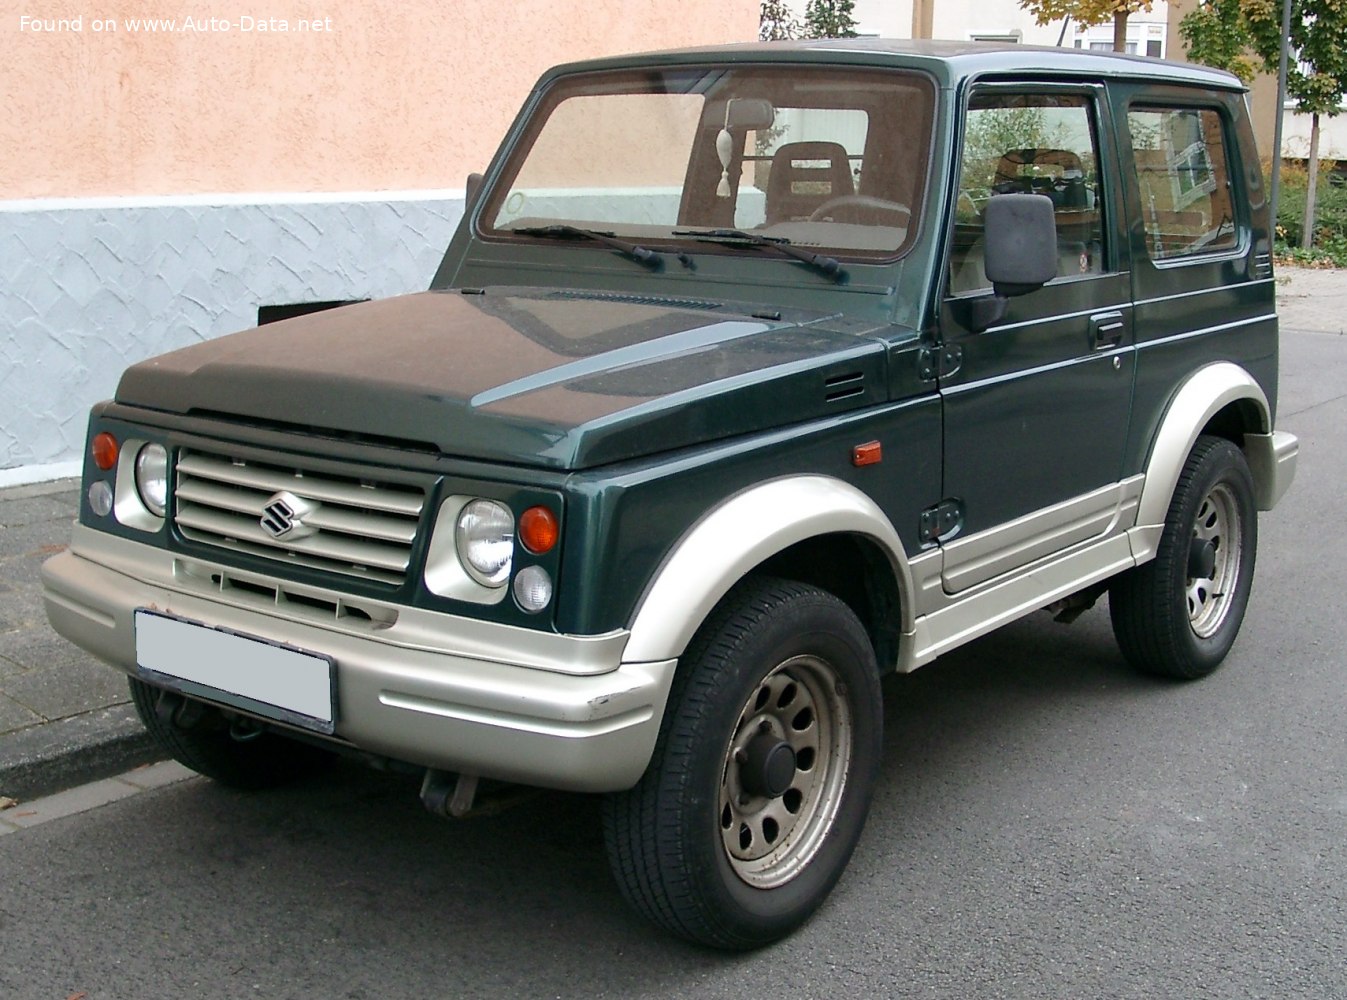 1992 Suzuki Samurai (SJ) 1.3 (SJ 413) (64 Hp)  Technical specs, data, fuel  consumption, Dimensions